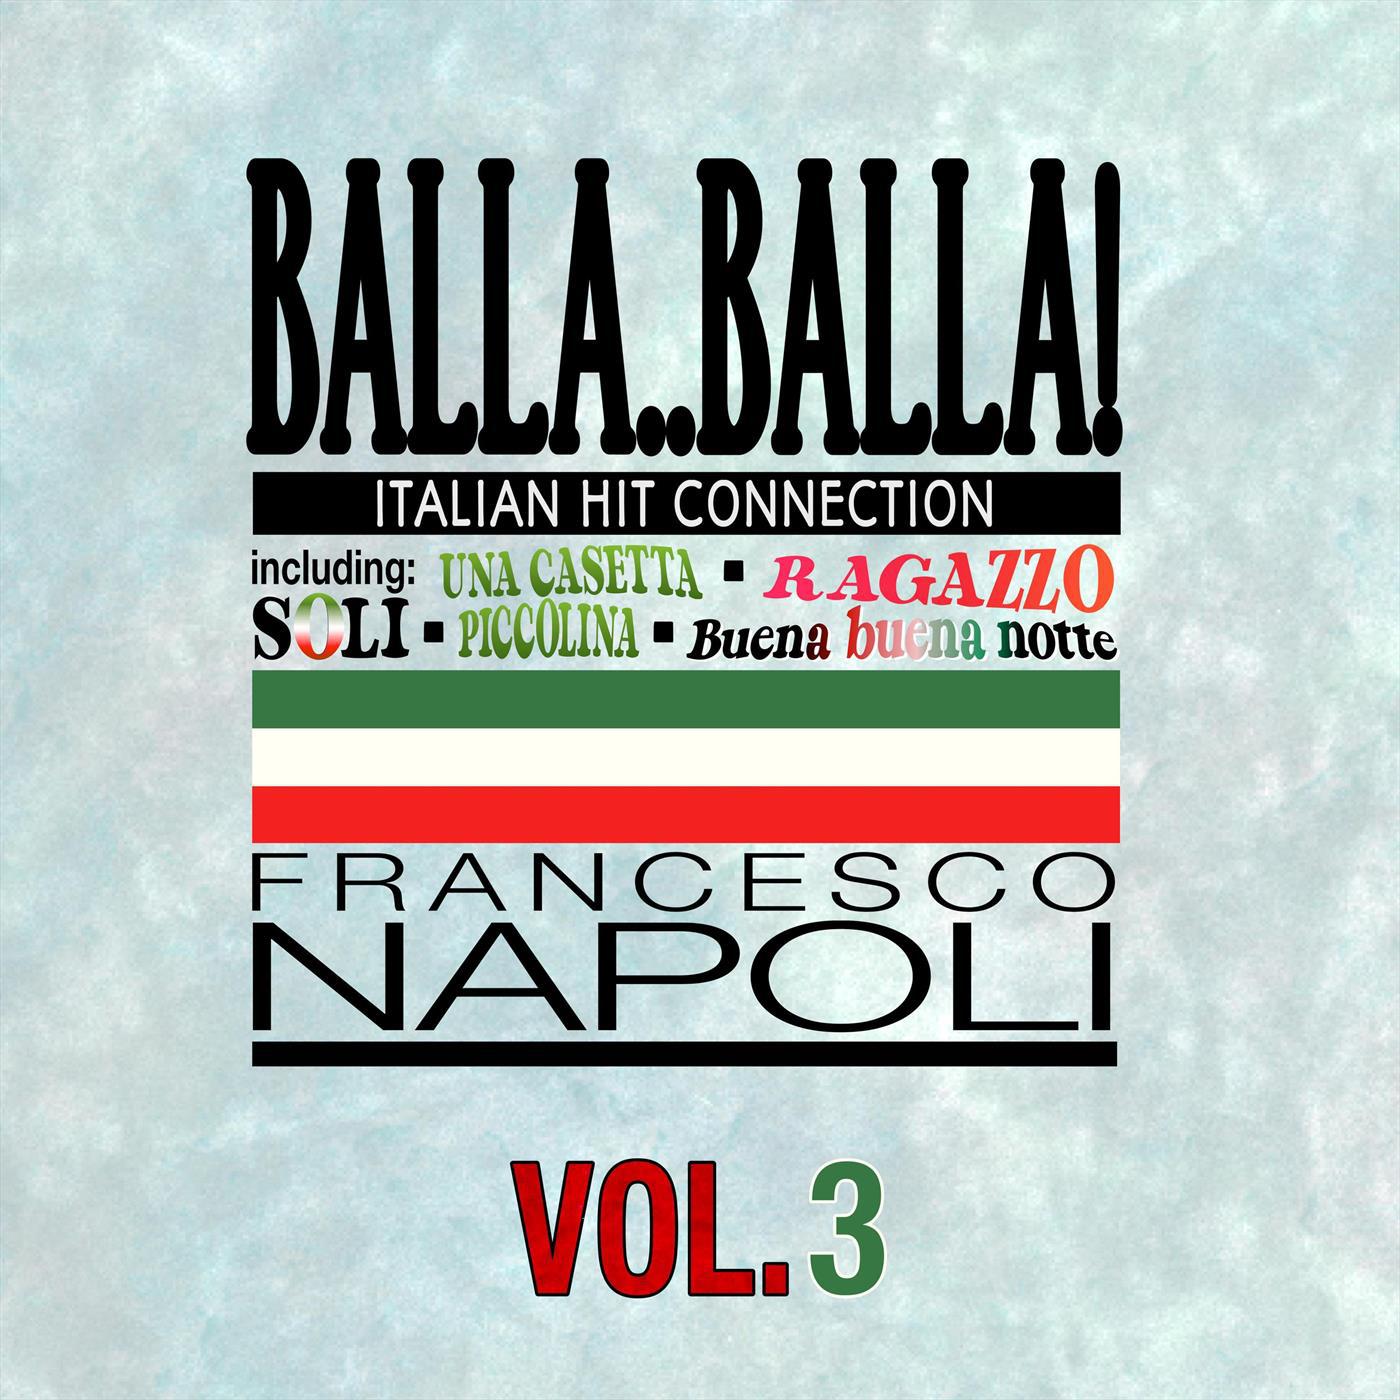 Balla..Balla! Vol.3 Italian Hit Connection (Maxi Version)